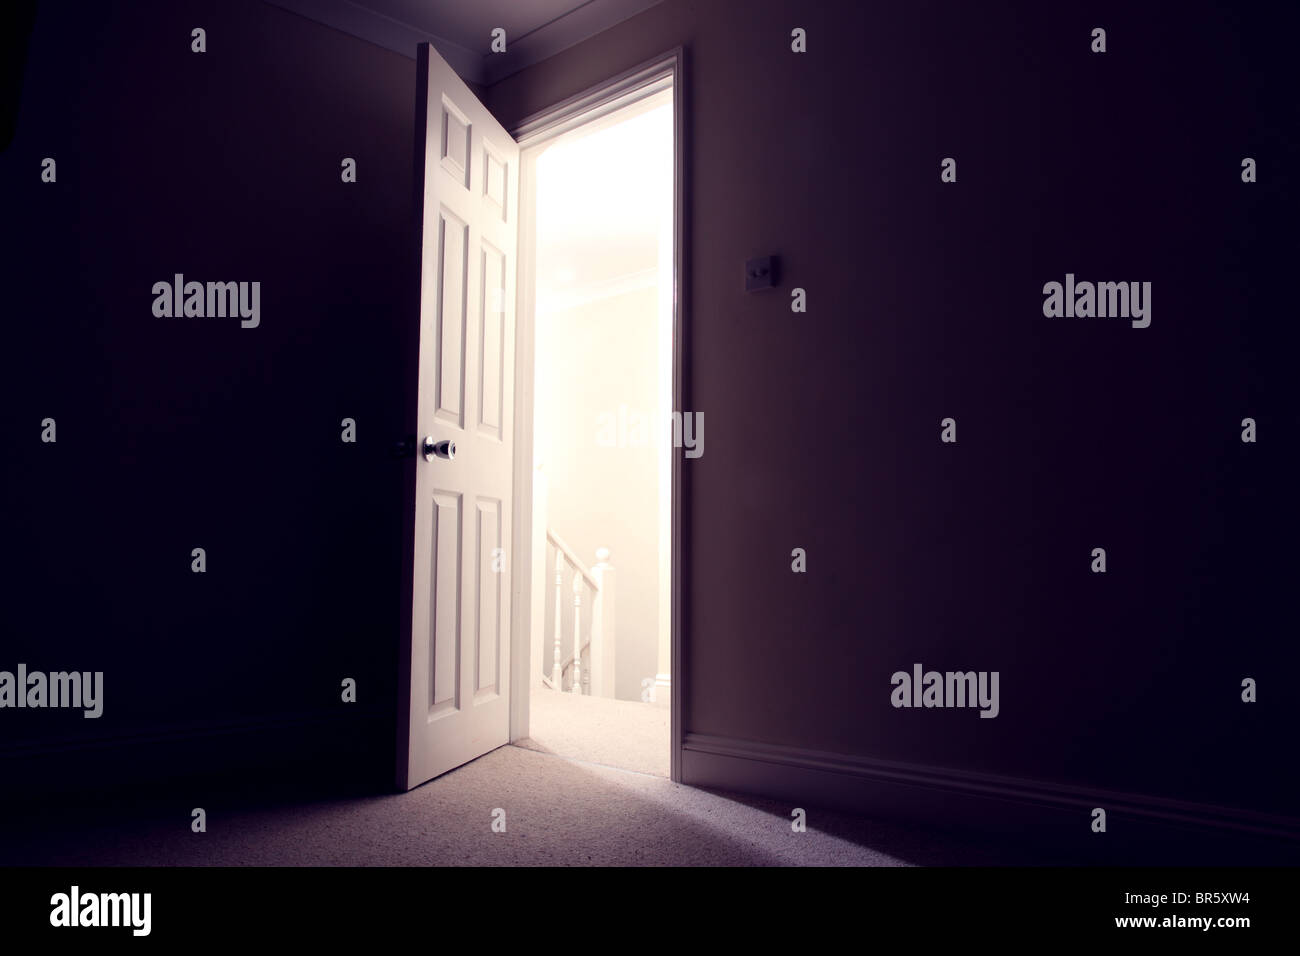 Dark room with open door light streaming in Stock Photo